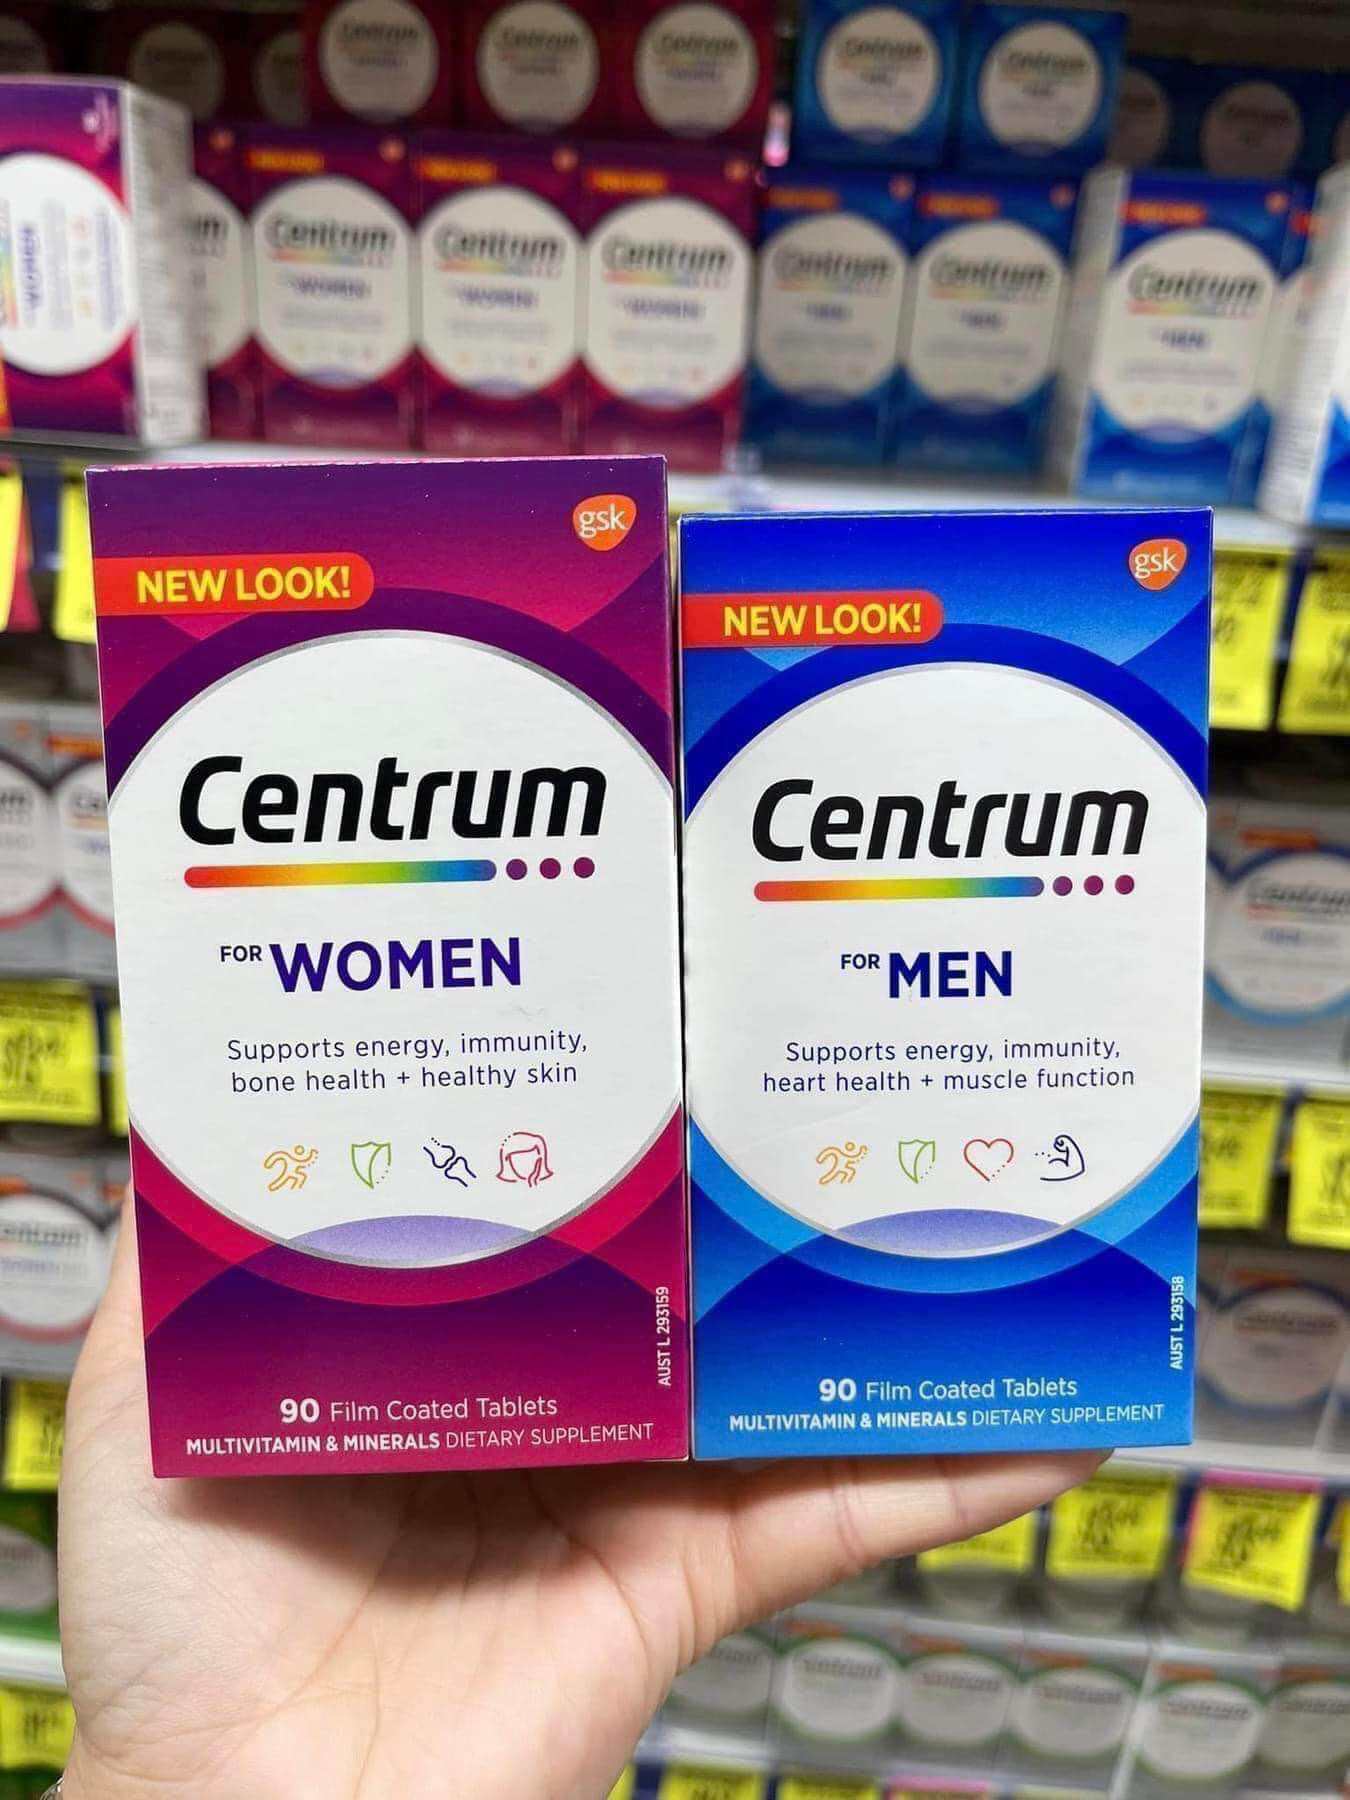 MẪU MỚI  Vitamin tổng hợp Centrum Advance Women Men trên dưới 50 tuổi